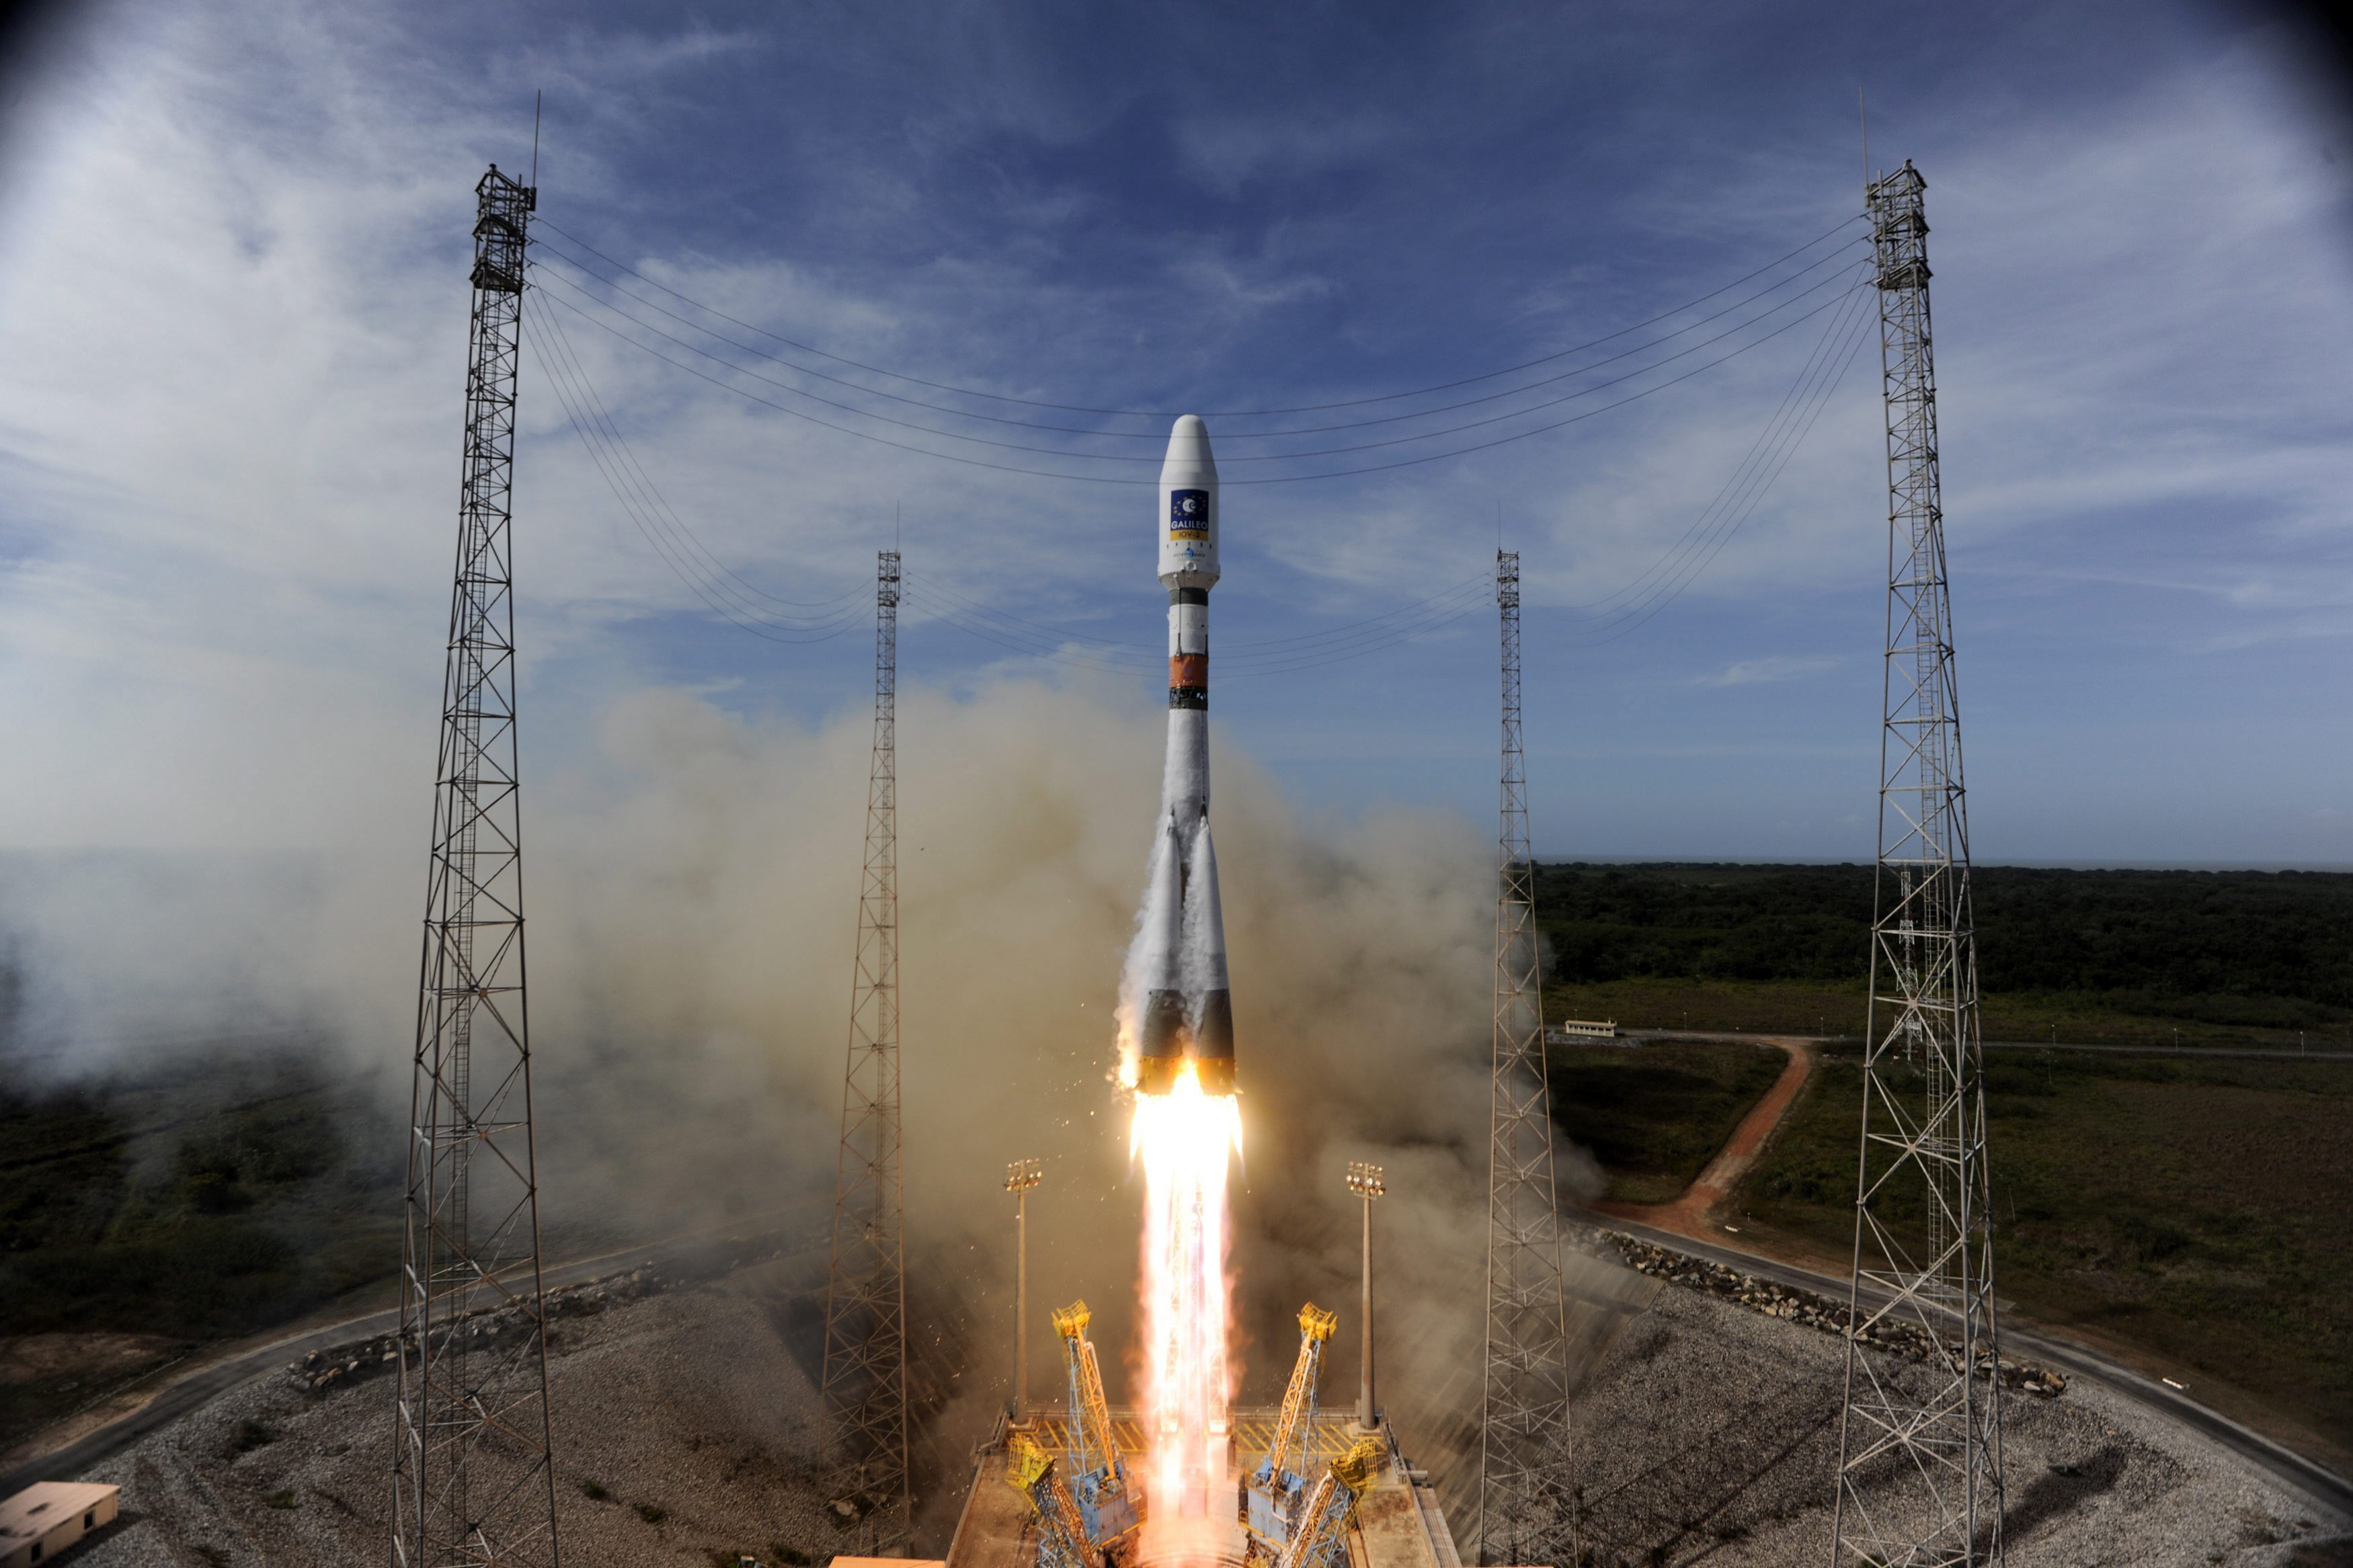 Foto de archivo de un cohete Soyuz en el momento de su lanzamiento desde el Centro Espacial Europeo de Kurú, en la Guayana francesa. EFE/Esa/Stephane Corvaja/Ho
